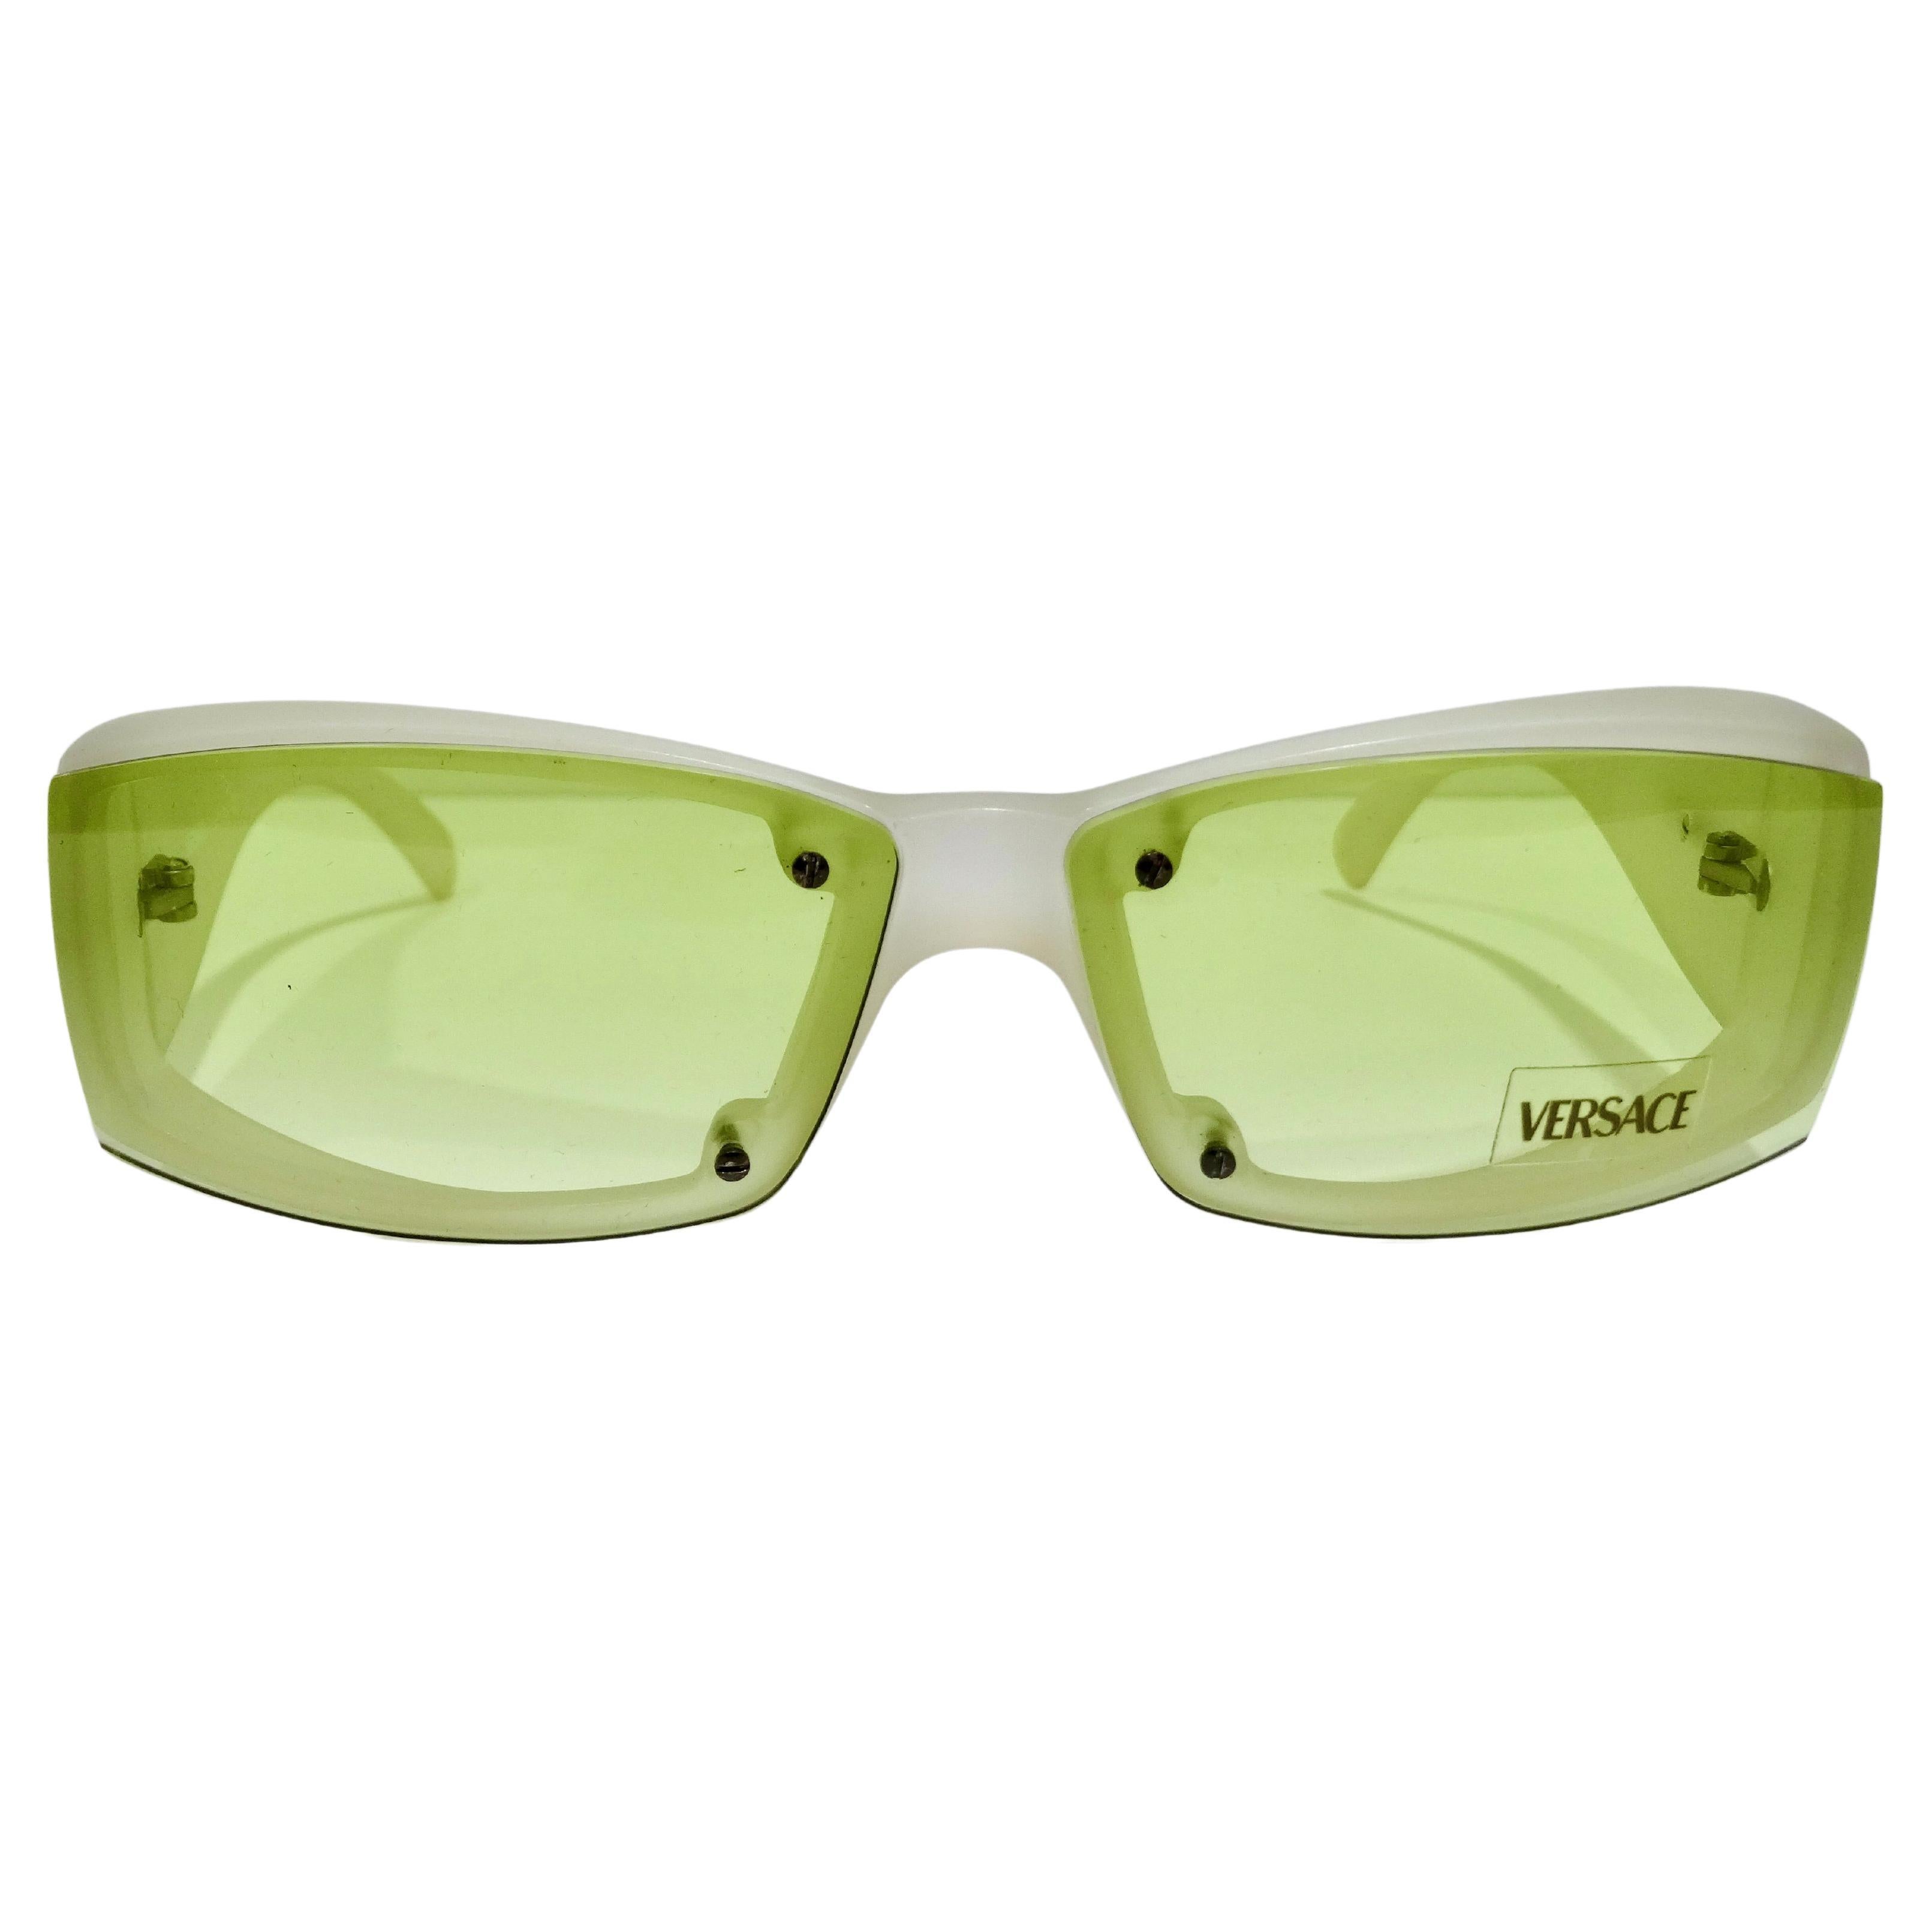 Versace Sonnenbrille/ Sunglasses Mod.4310 5170/8G Gr.55 Konkursaufkauf //395 20 